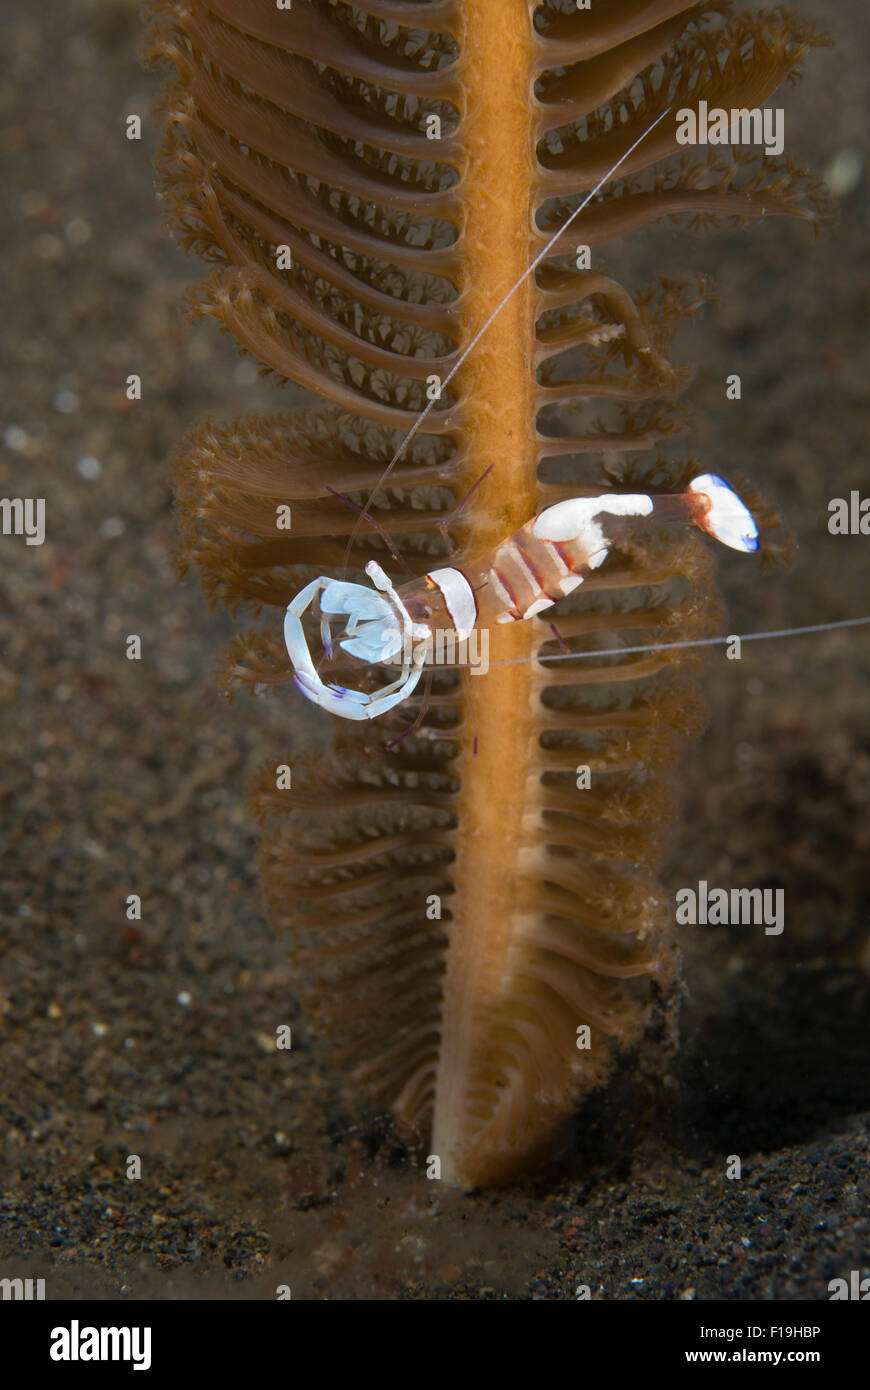 Px8581-D. Anémone magnifique crevettes (Ancylomenes magnificus), à l'assainissement de crevettes, anémones commensales sur ici et sur une mer stylo, tr Banque D'Images